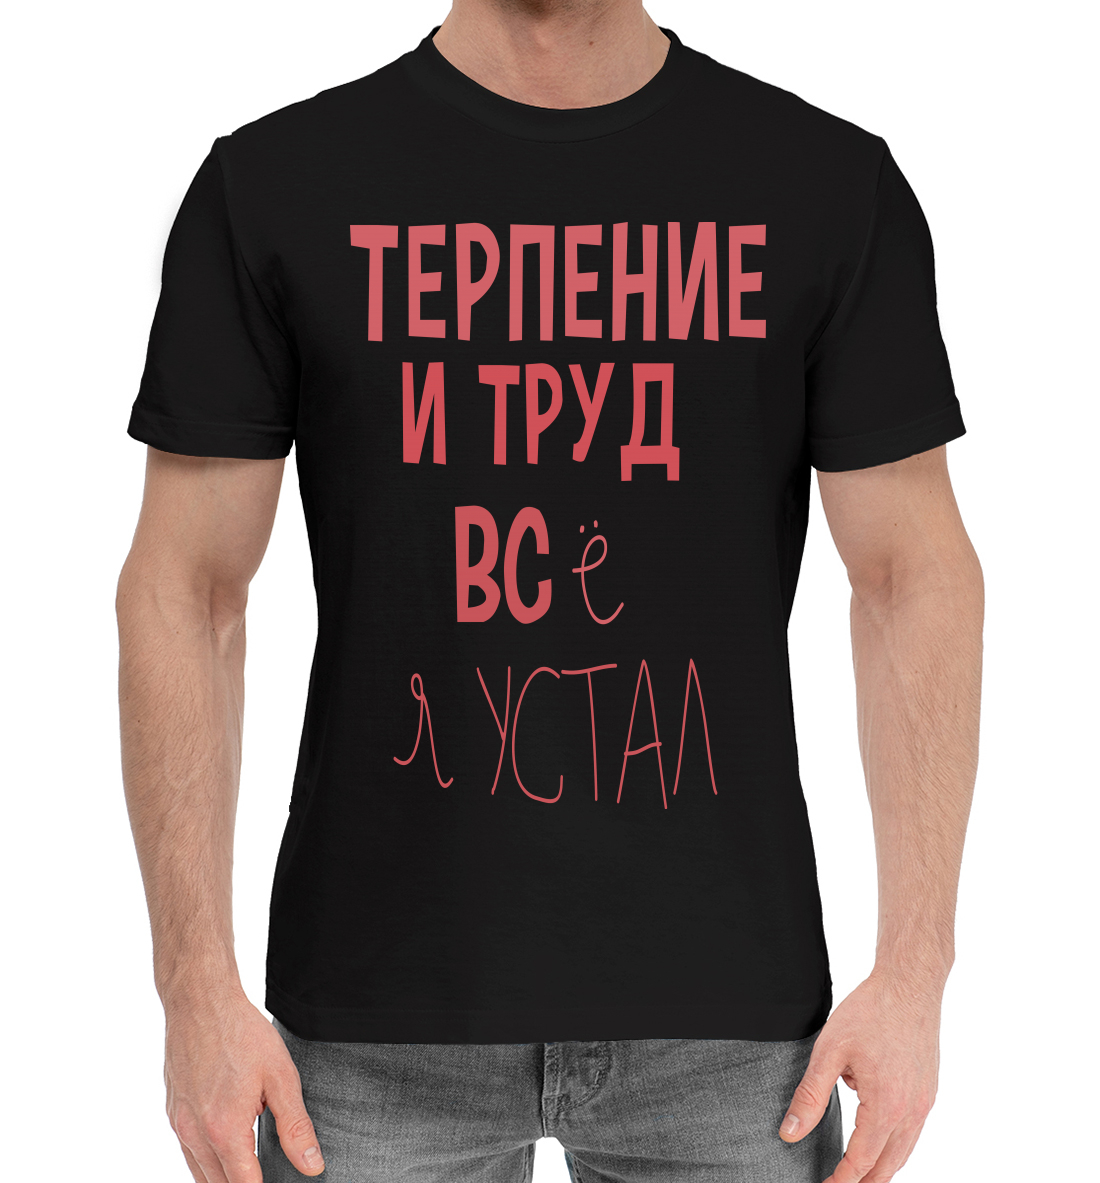 Мужская Хлопковая футболка с надписью Терпение и труд..., артикул NDP-992363-hfu-2mp